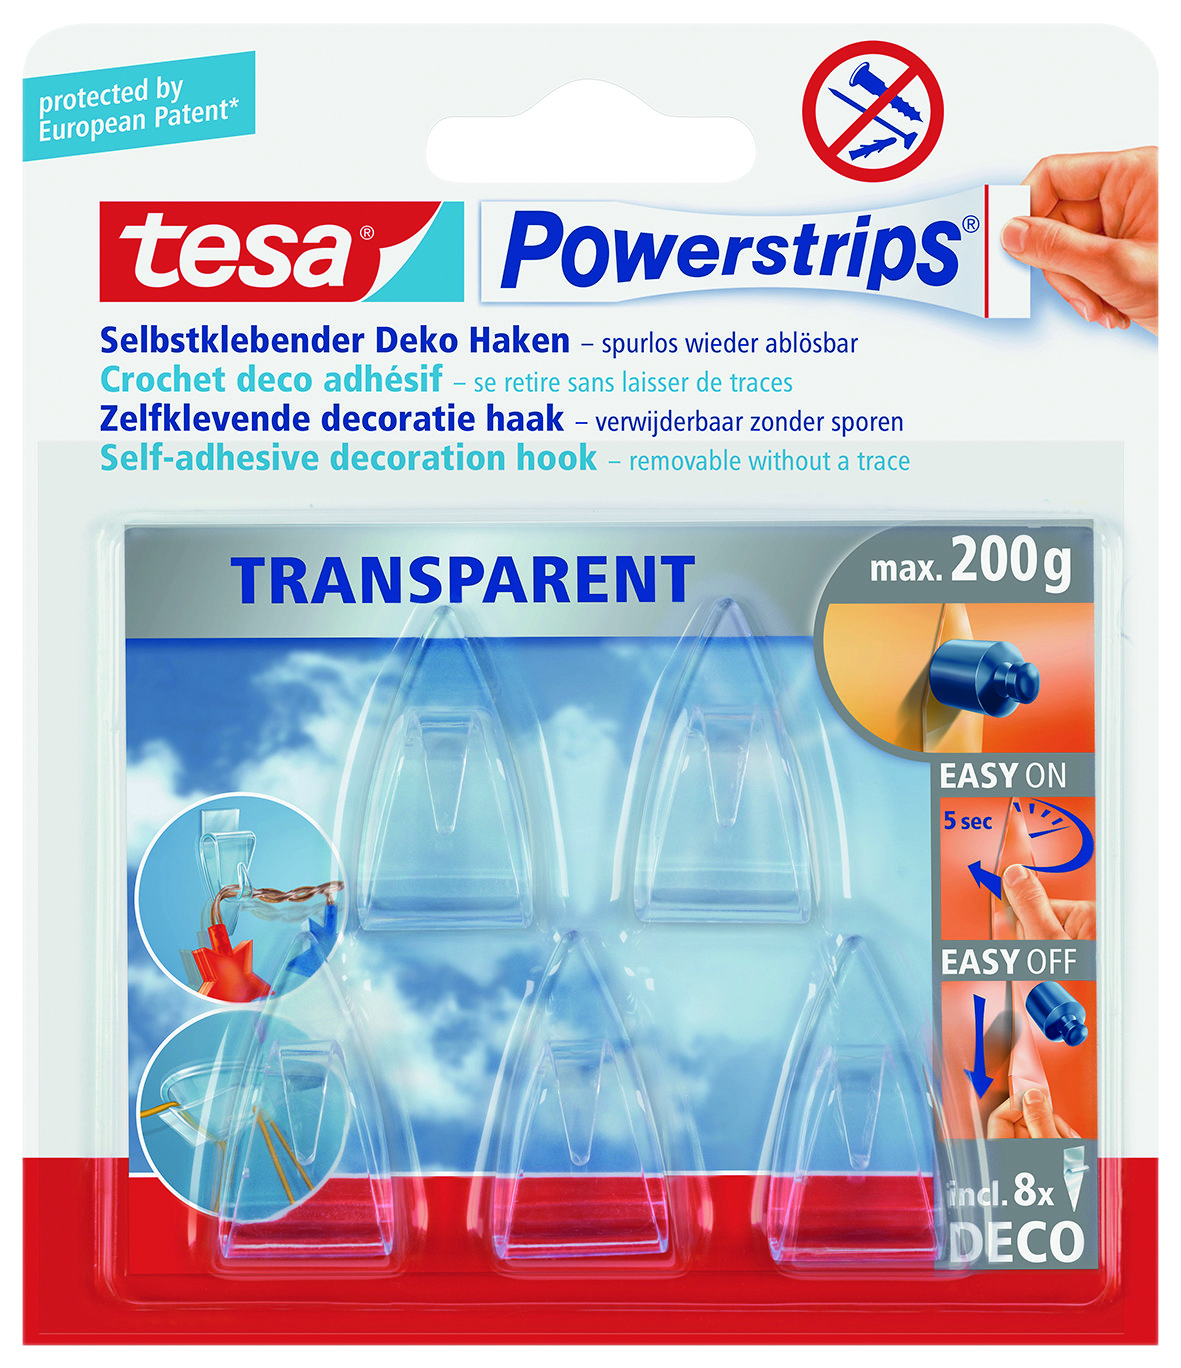 tesa Powerstrips® Transparent Deko Haken Dekoration bis zu 200 g ohne bohren